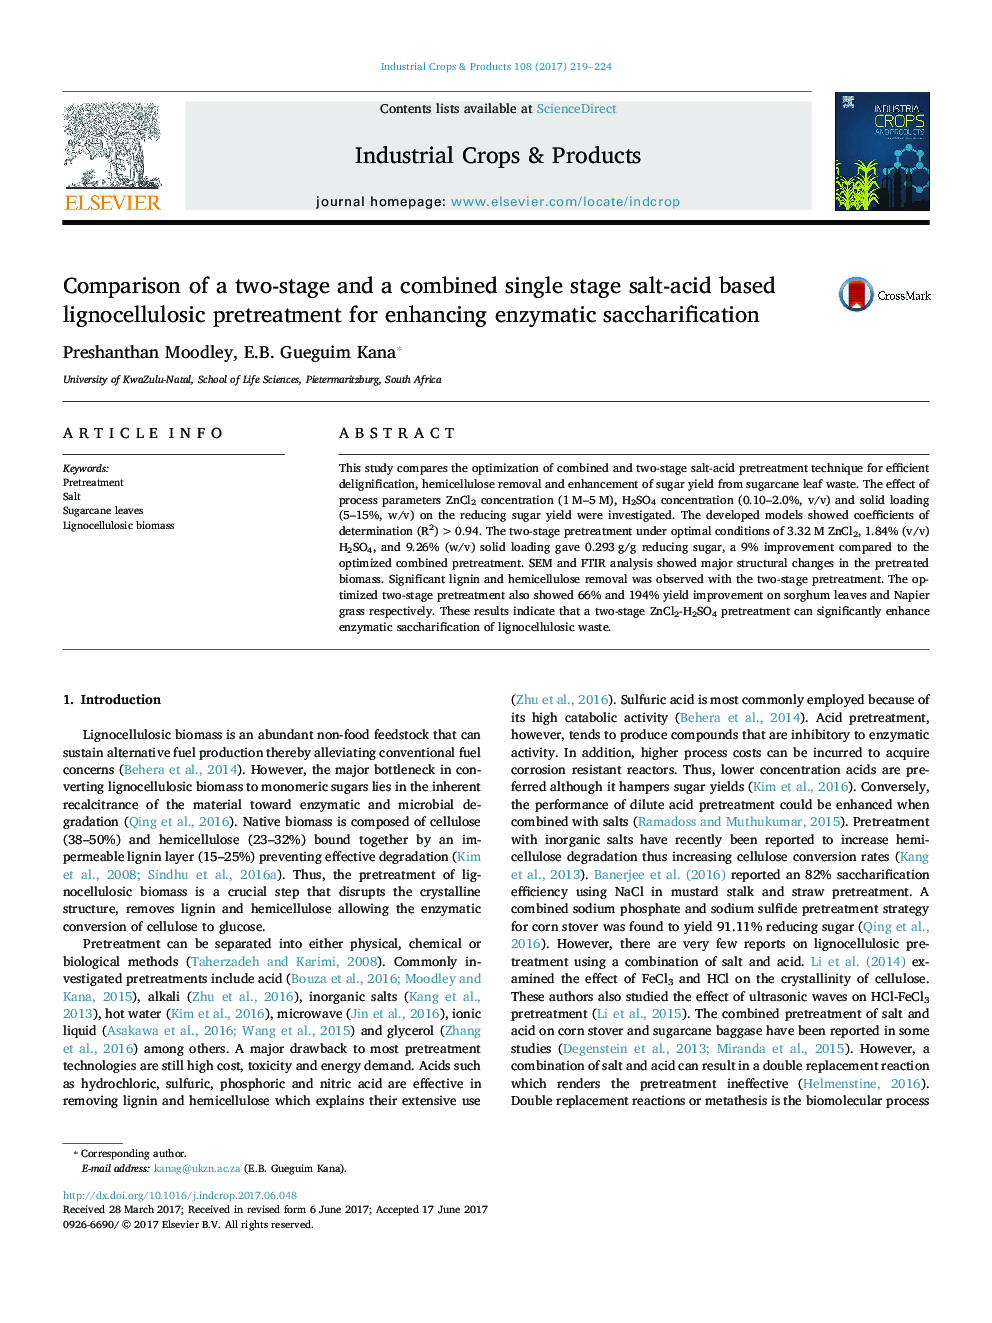 مقایسه مقدماتی دو مرحله ای و یک مرحله قبل از لیگنوسلولوزیک بر پایه نمک اسید ترکیبی برای تقویت واکنش زنجیره ای آنزیمی 